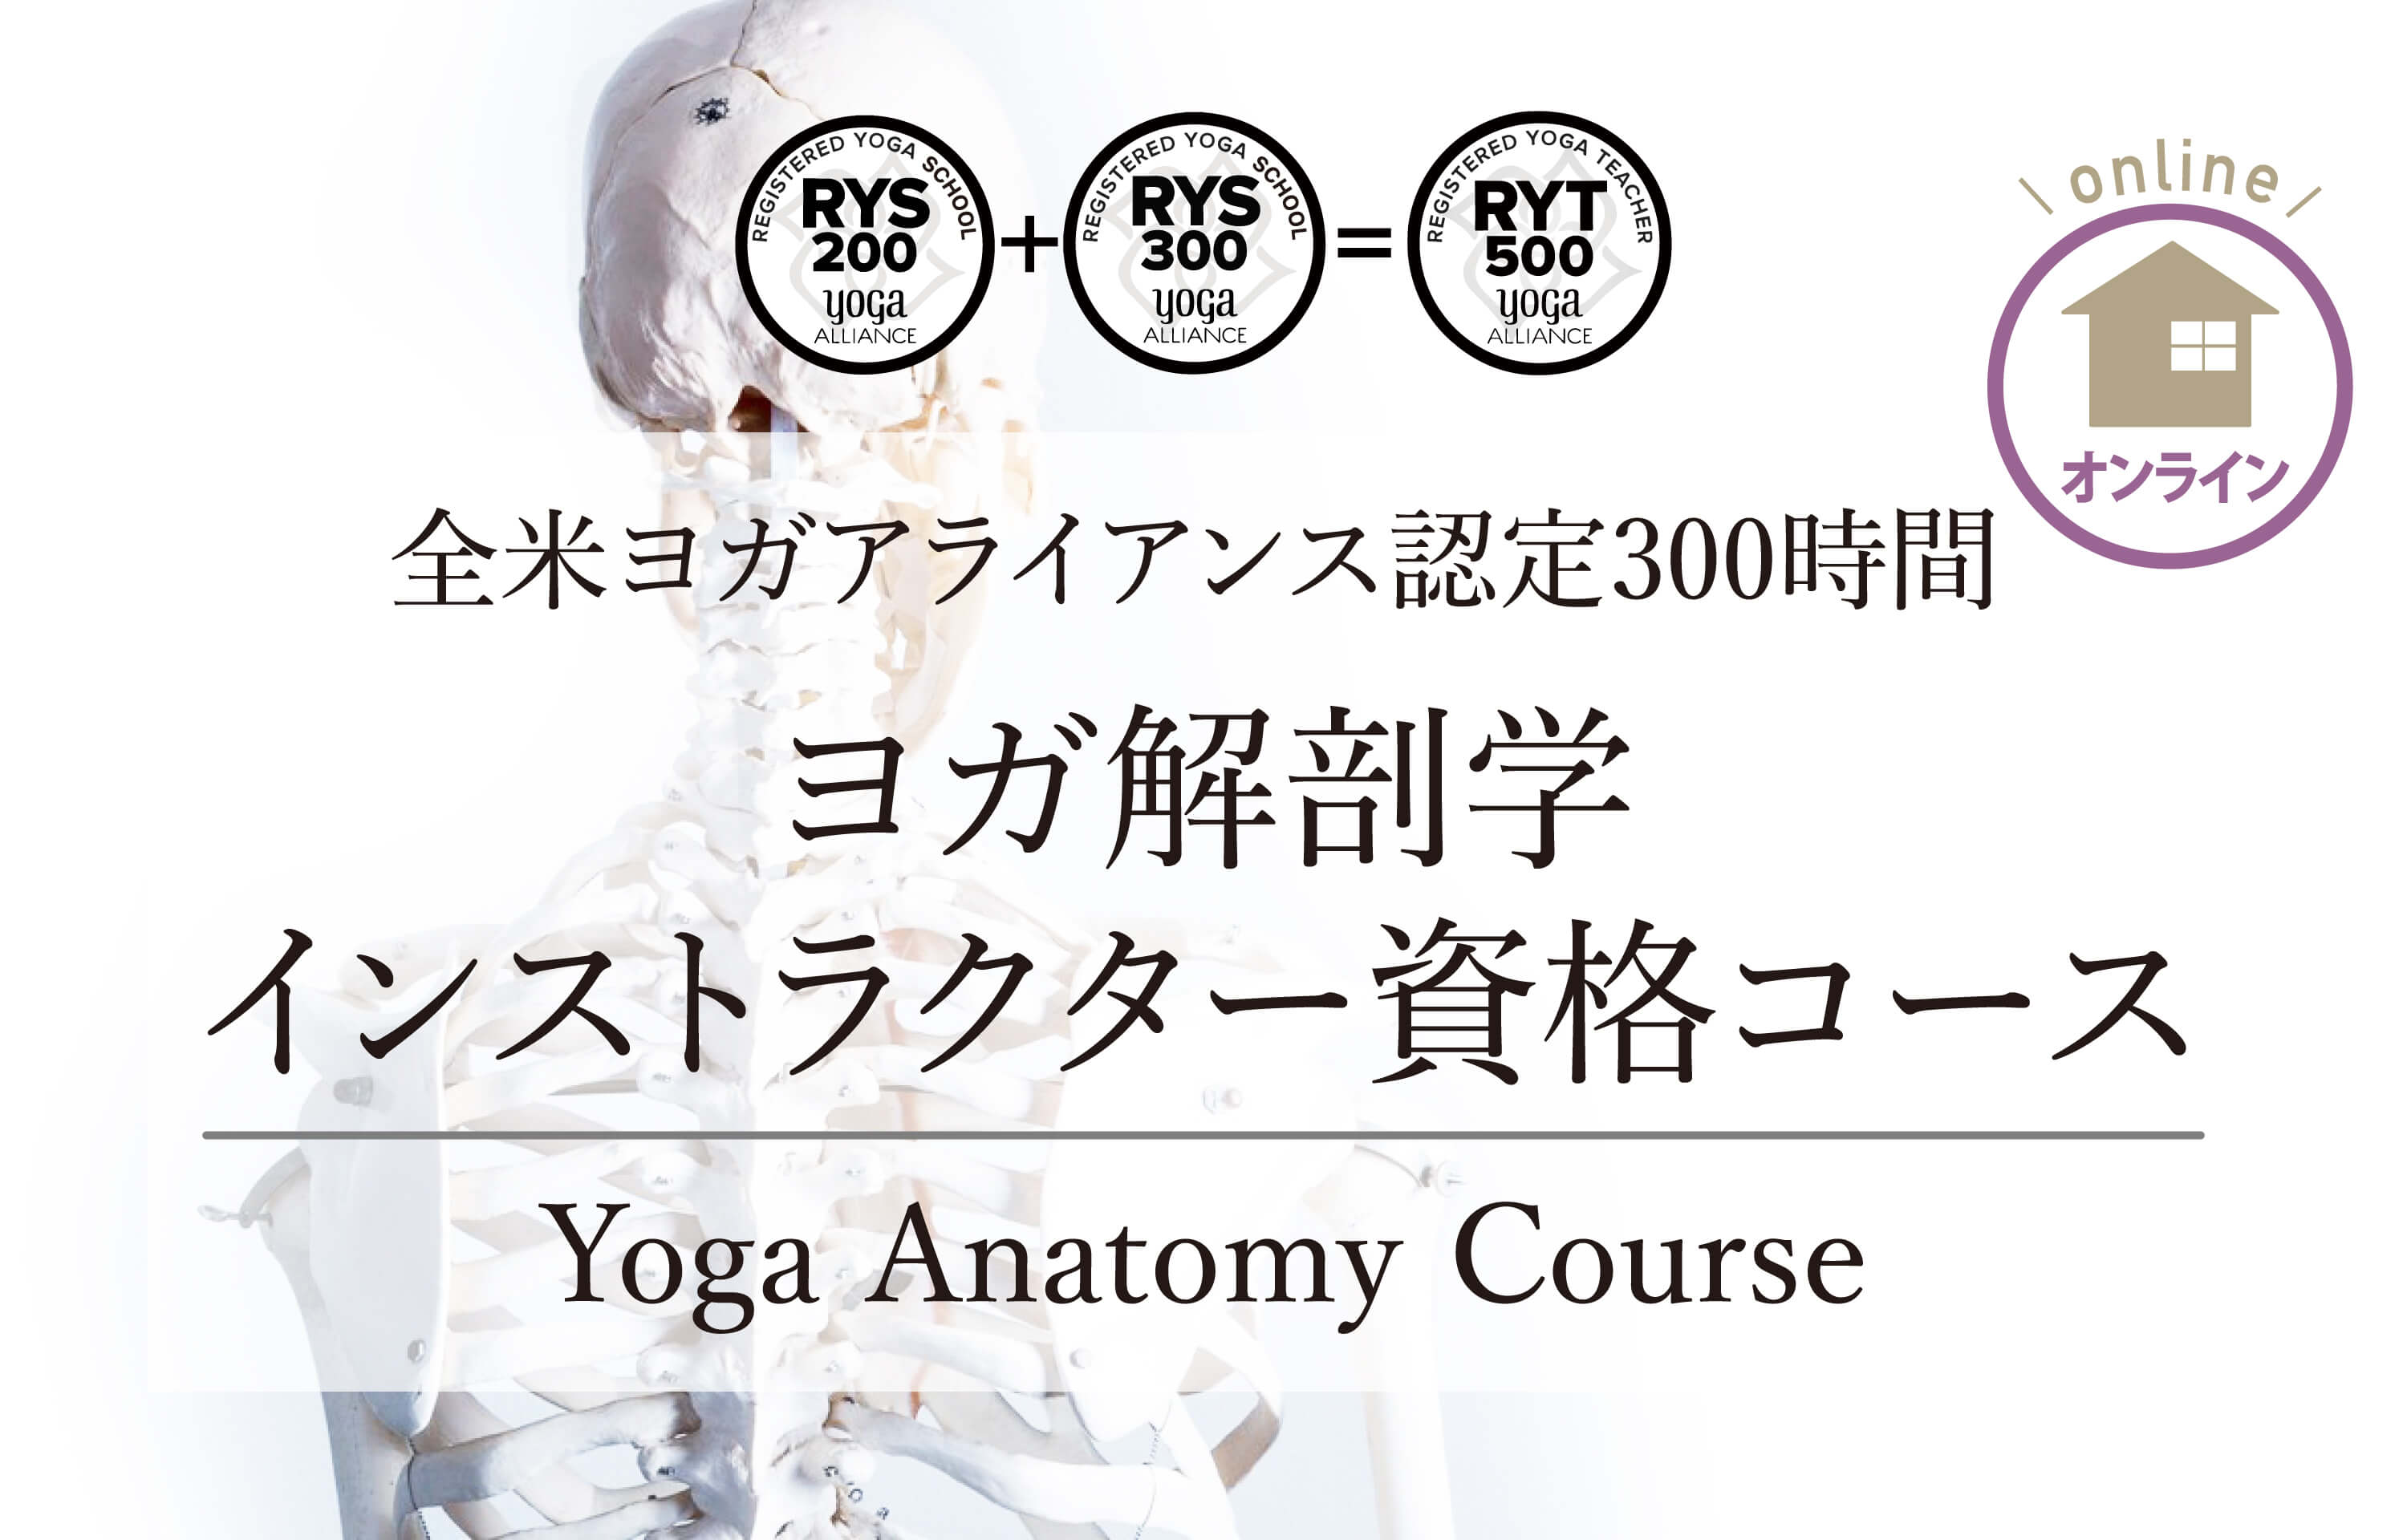 ヨガ解剖学  オンラインヨガ資格コース